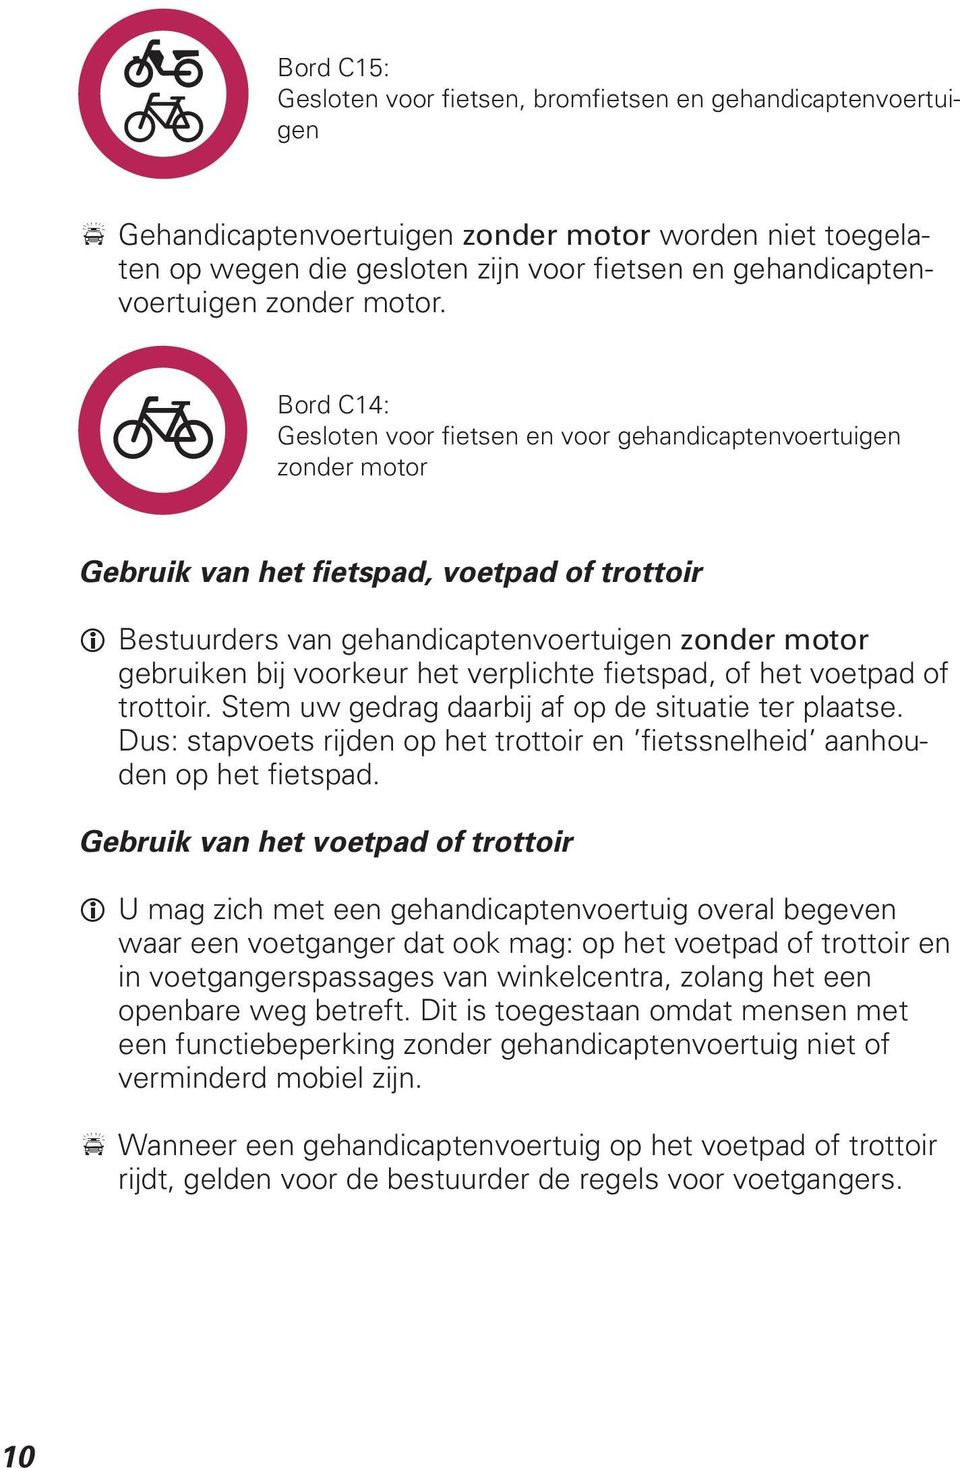 Bord C14: Gesloten voor fietsen en voor gehandicaptenvoertuigen zonder motor Gebruik van het fietspad, voetpad of trottoir i Bestuurders van gehandicaptenvoertuigen zonder motor gebruiken bij